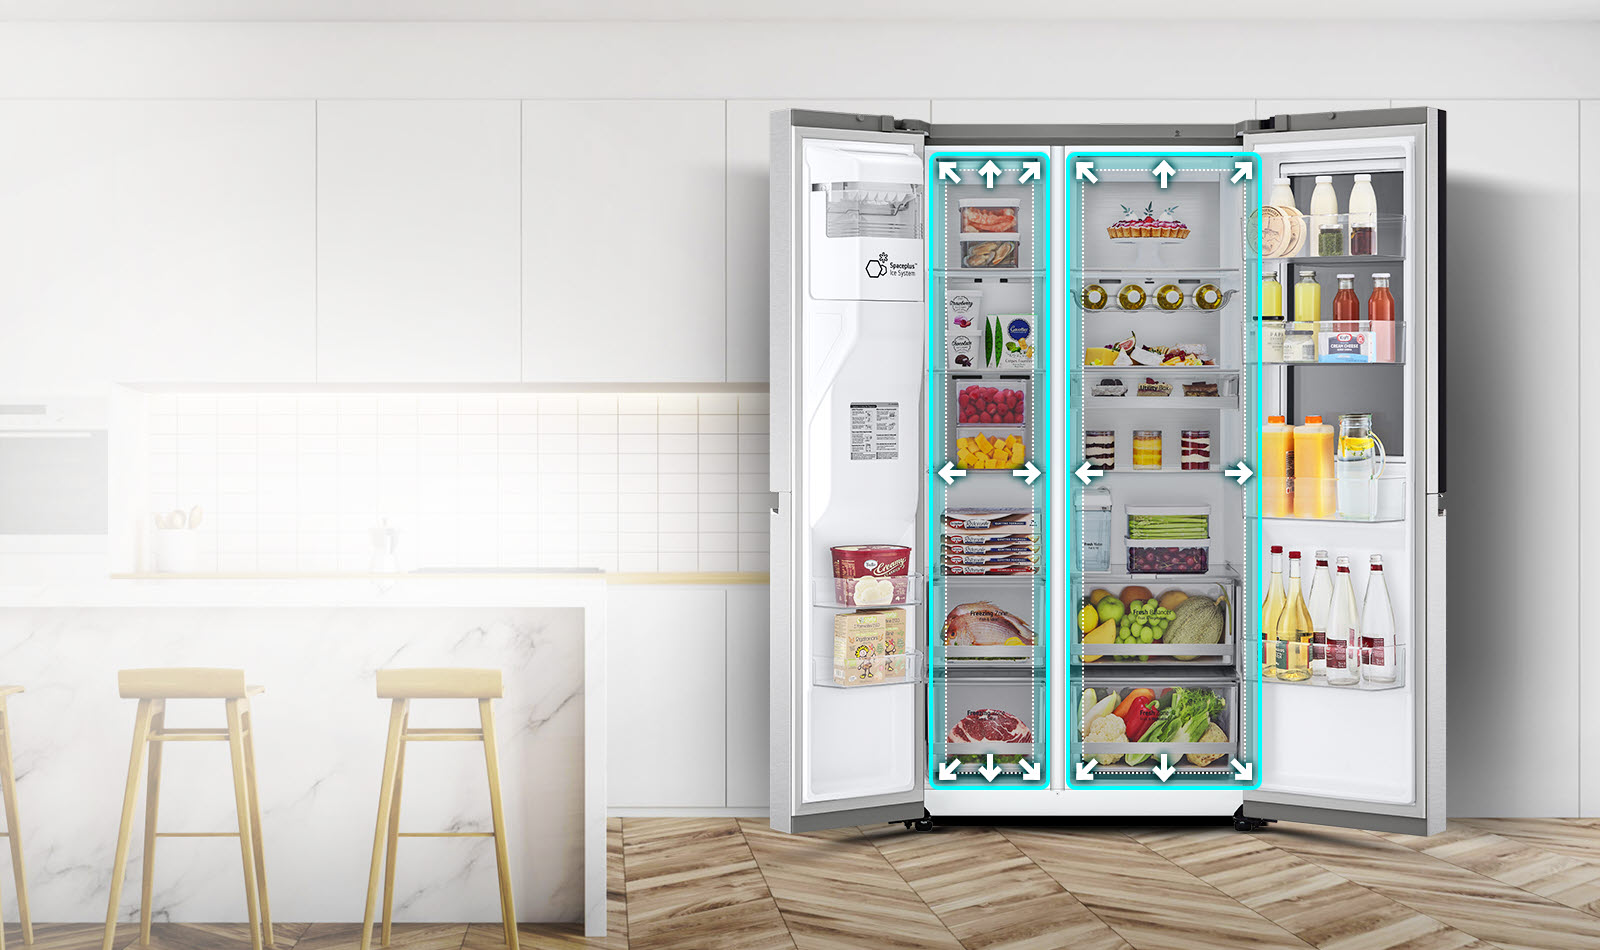 Începe un videoclip cu vederea frontală a frigiderului cu ambele uși larg deschise. Spațiile interioare sunt subliniate cu linii de neon și săgețile înce
                                  <div class=